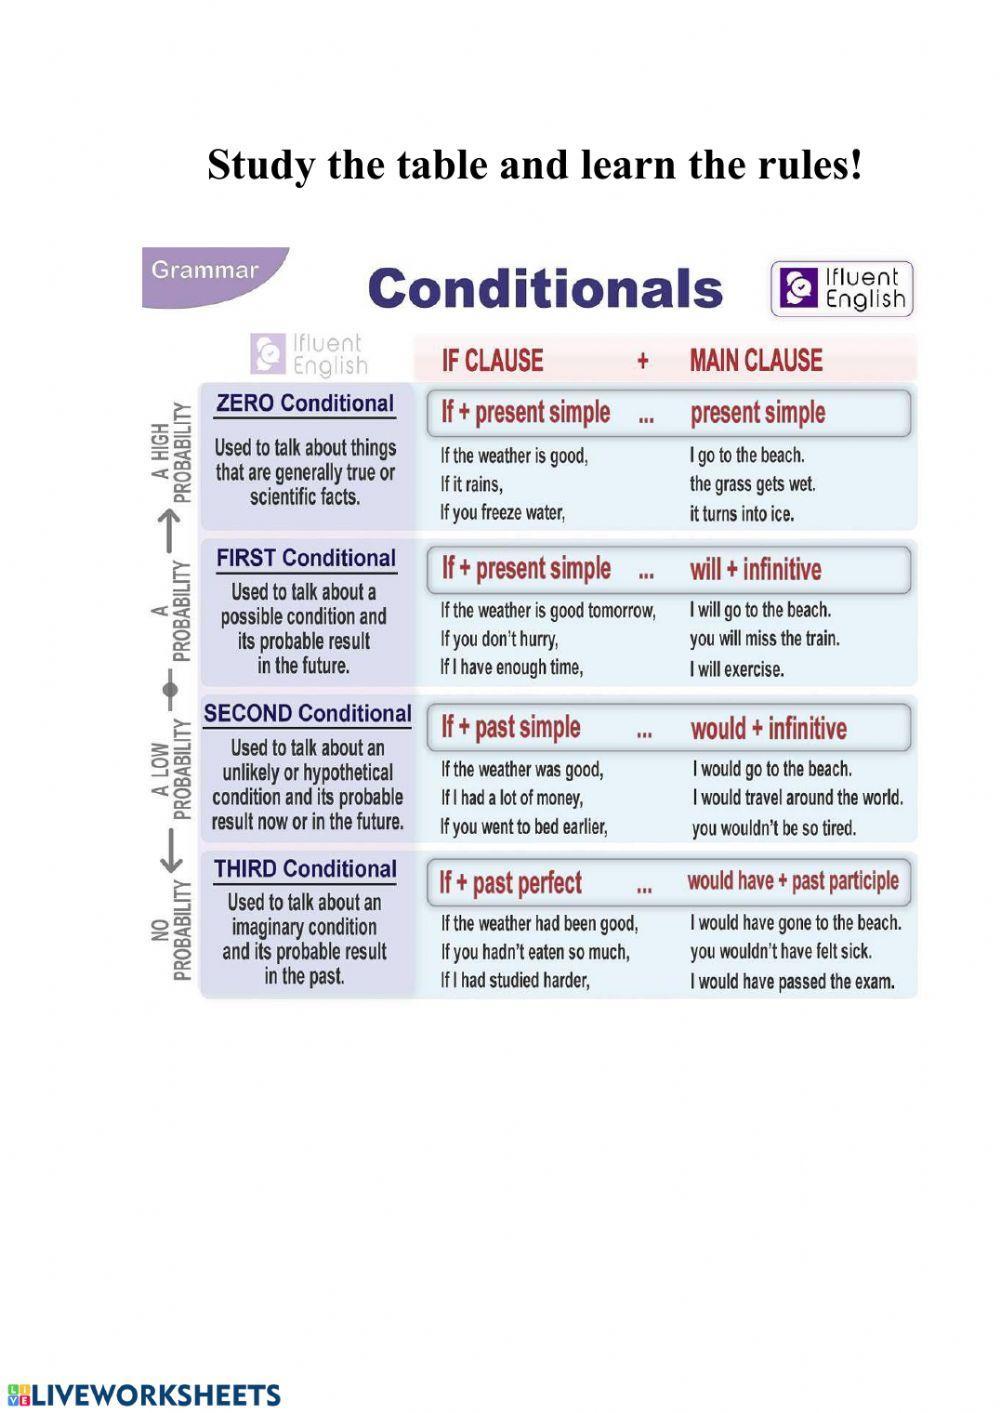 Conditionals (Zero,First,Second,Third)